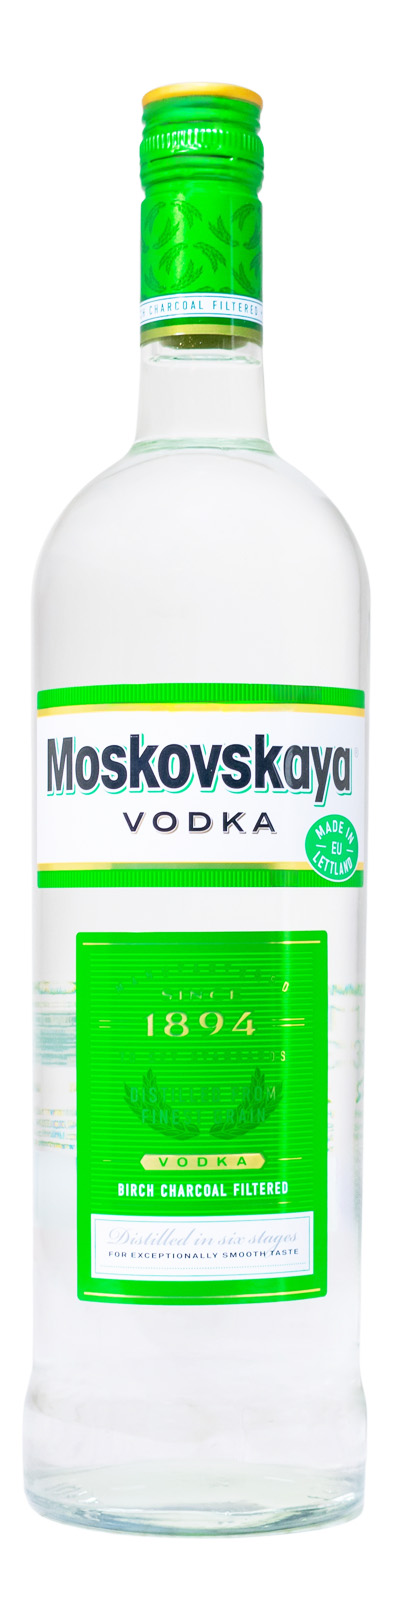 Moskovskaya Vodka - 1 Liter 38% vol